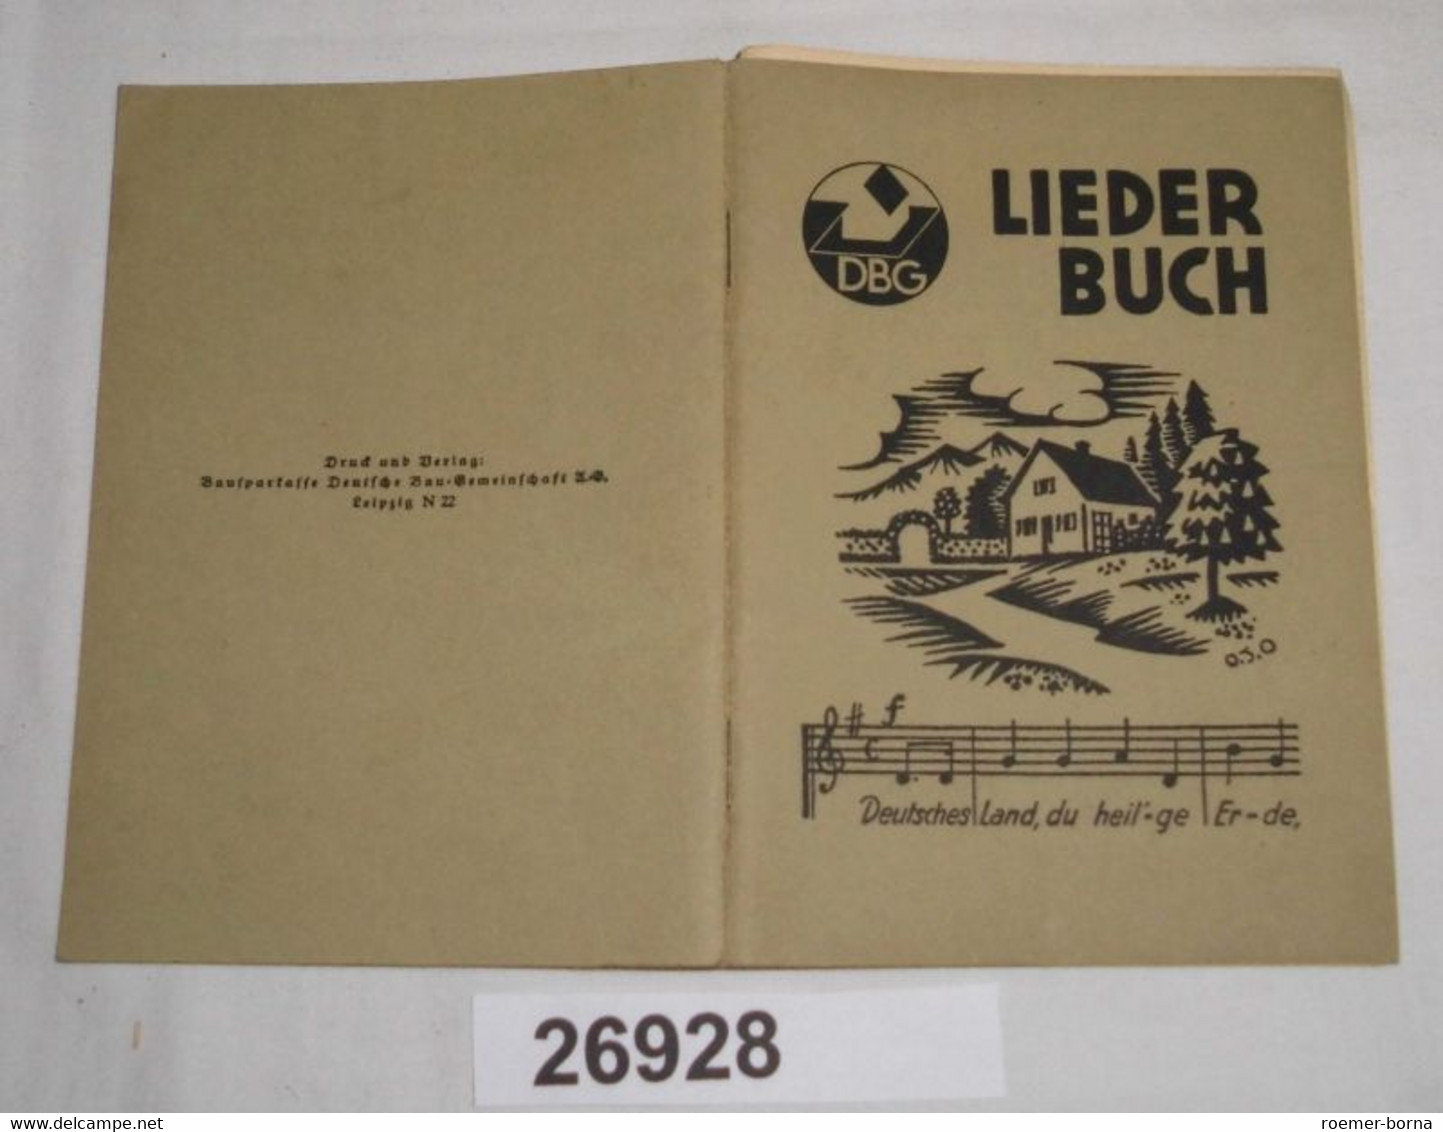 DBG Liederbuch - Musik